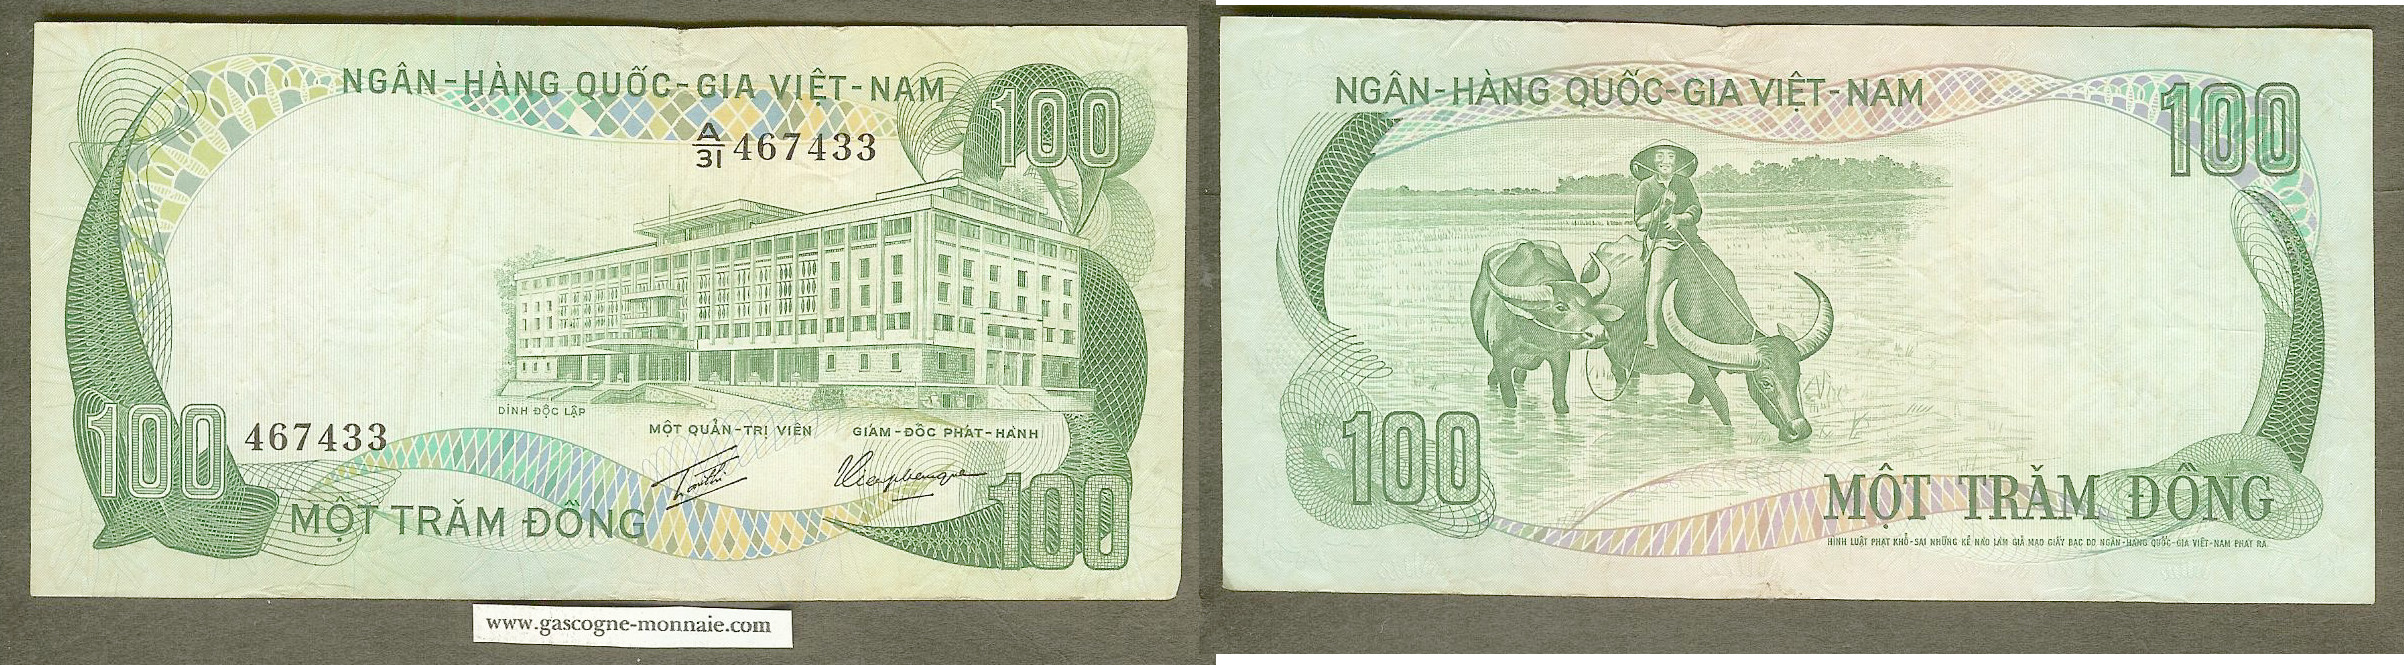 Viet Nam du Sud 100 dong n.d.( 1970) TTB